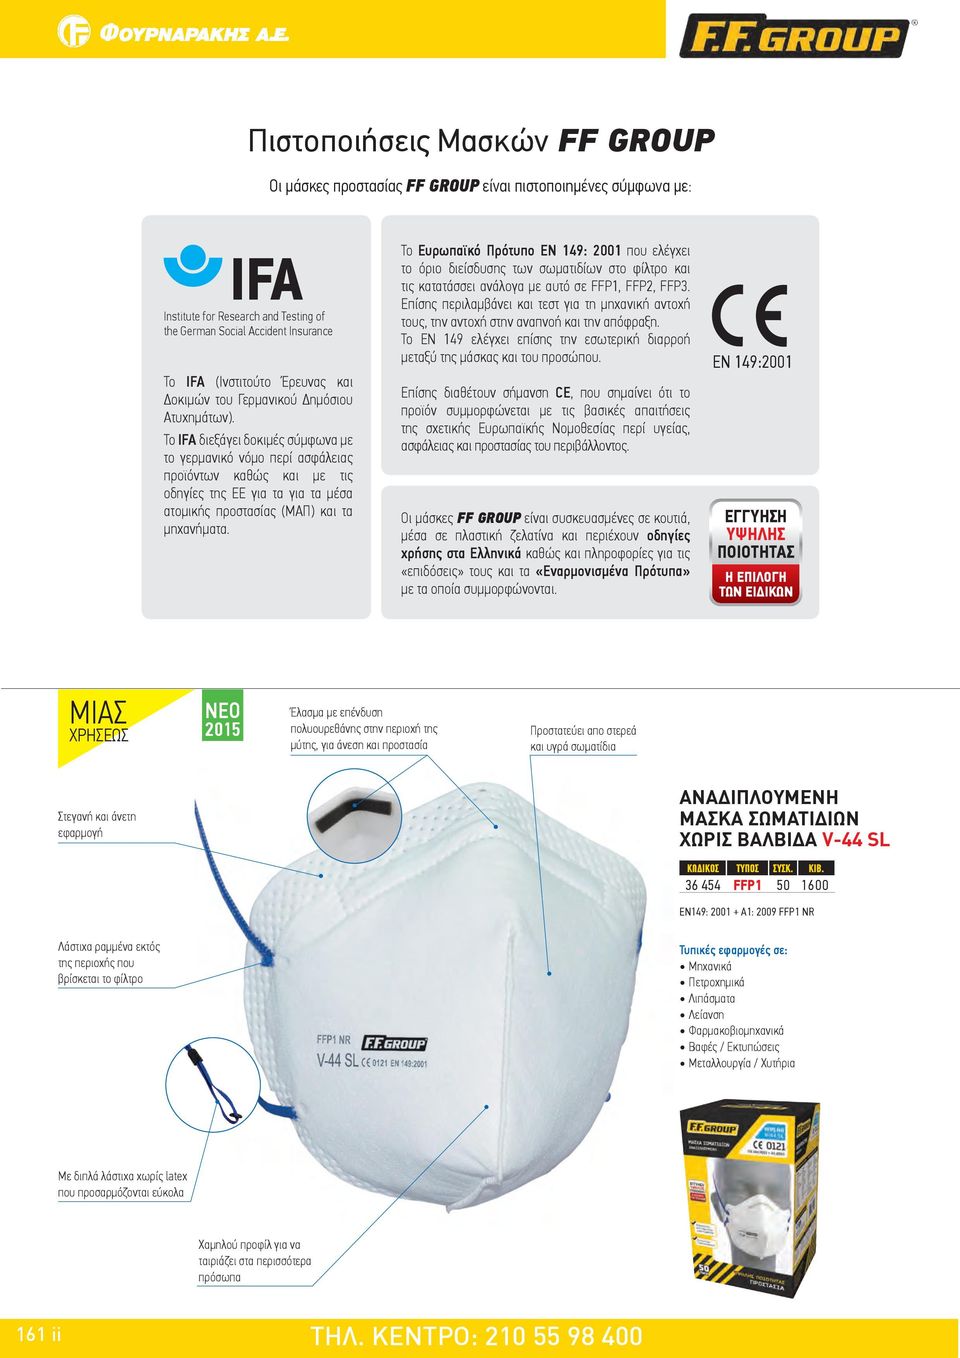 Το IFA διεξάγει δοκιμές σύμφωνα με το γερμανικό νόμο περί ασφάλειας προϊόντων καθώς και με τις οδηγίες της ΕΕ για τα για τα μέσα ατομικής προστασίας (ΜΑΠ) και τα μηχανήματα.